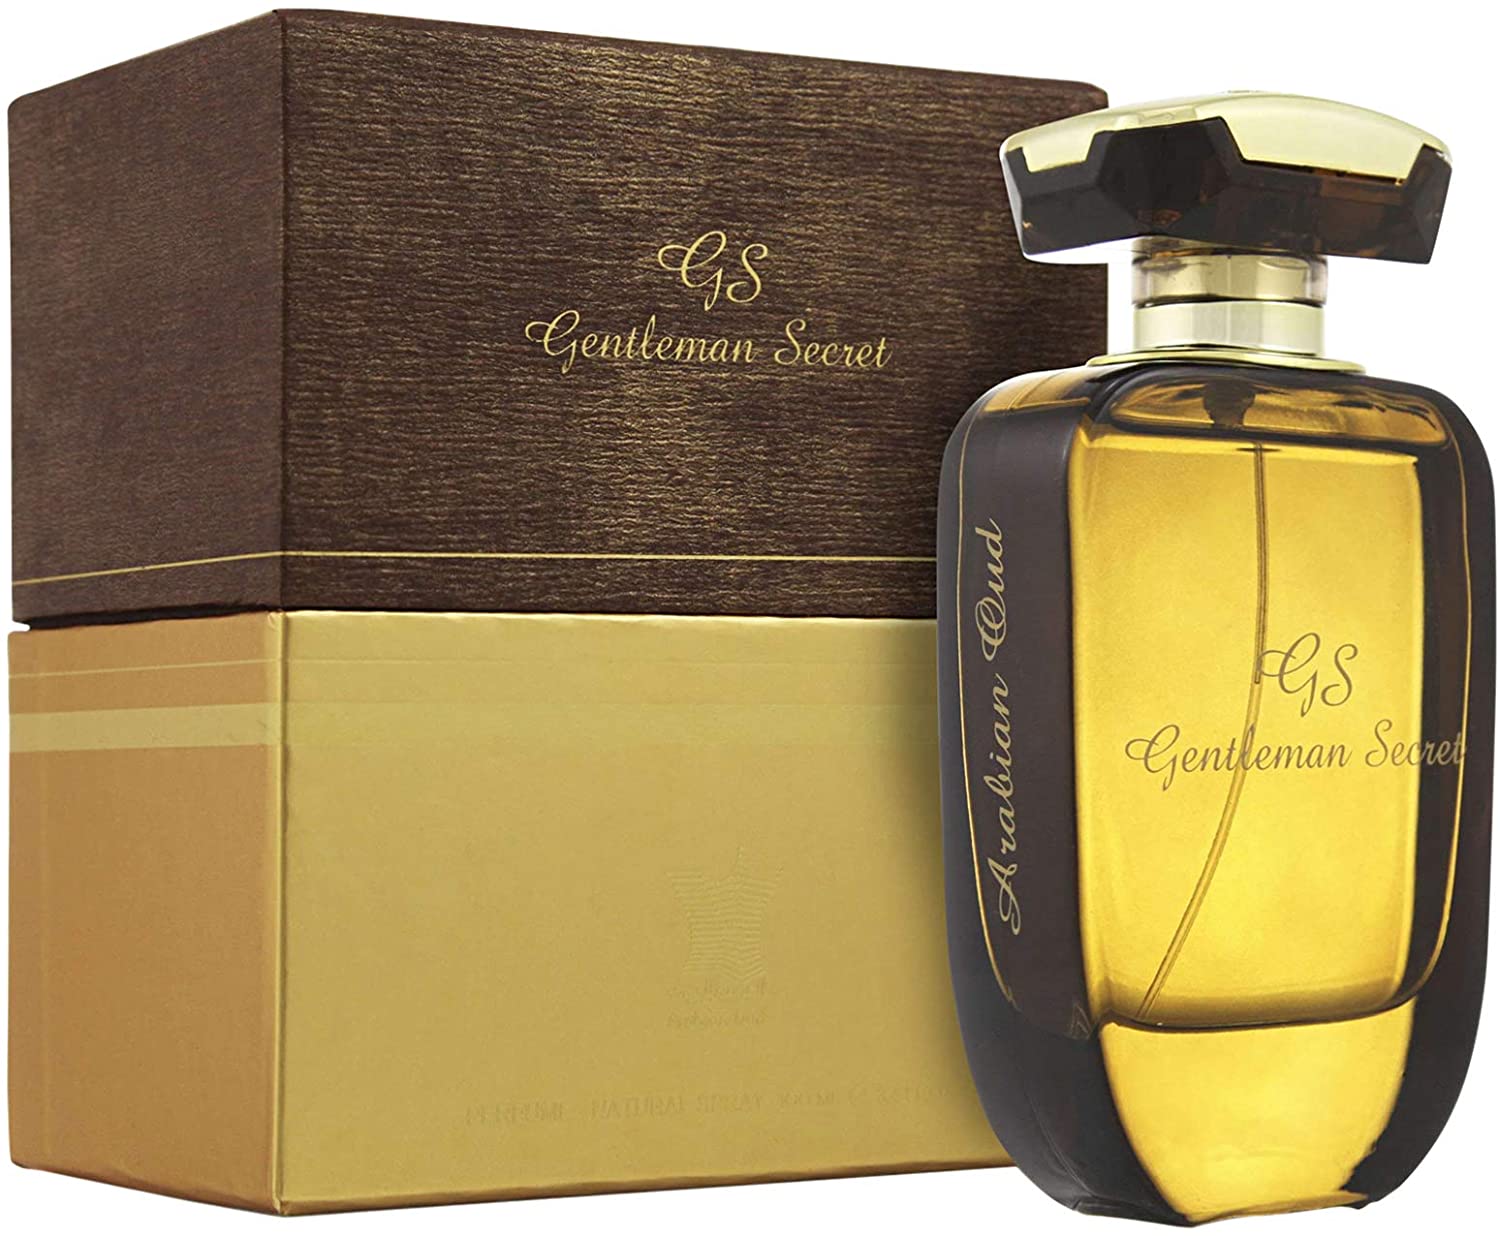 gentleman secret perfume